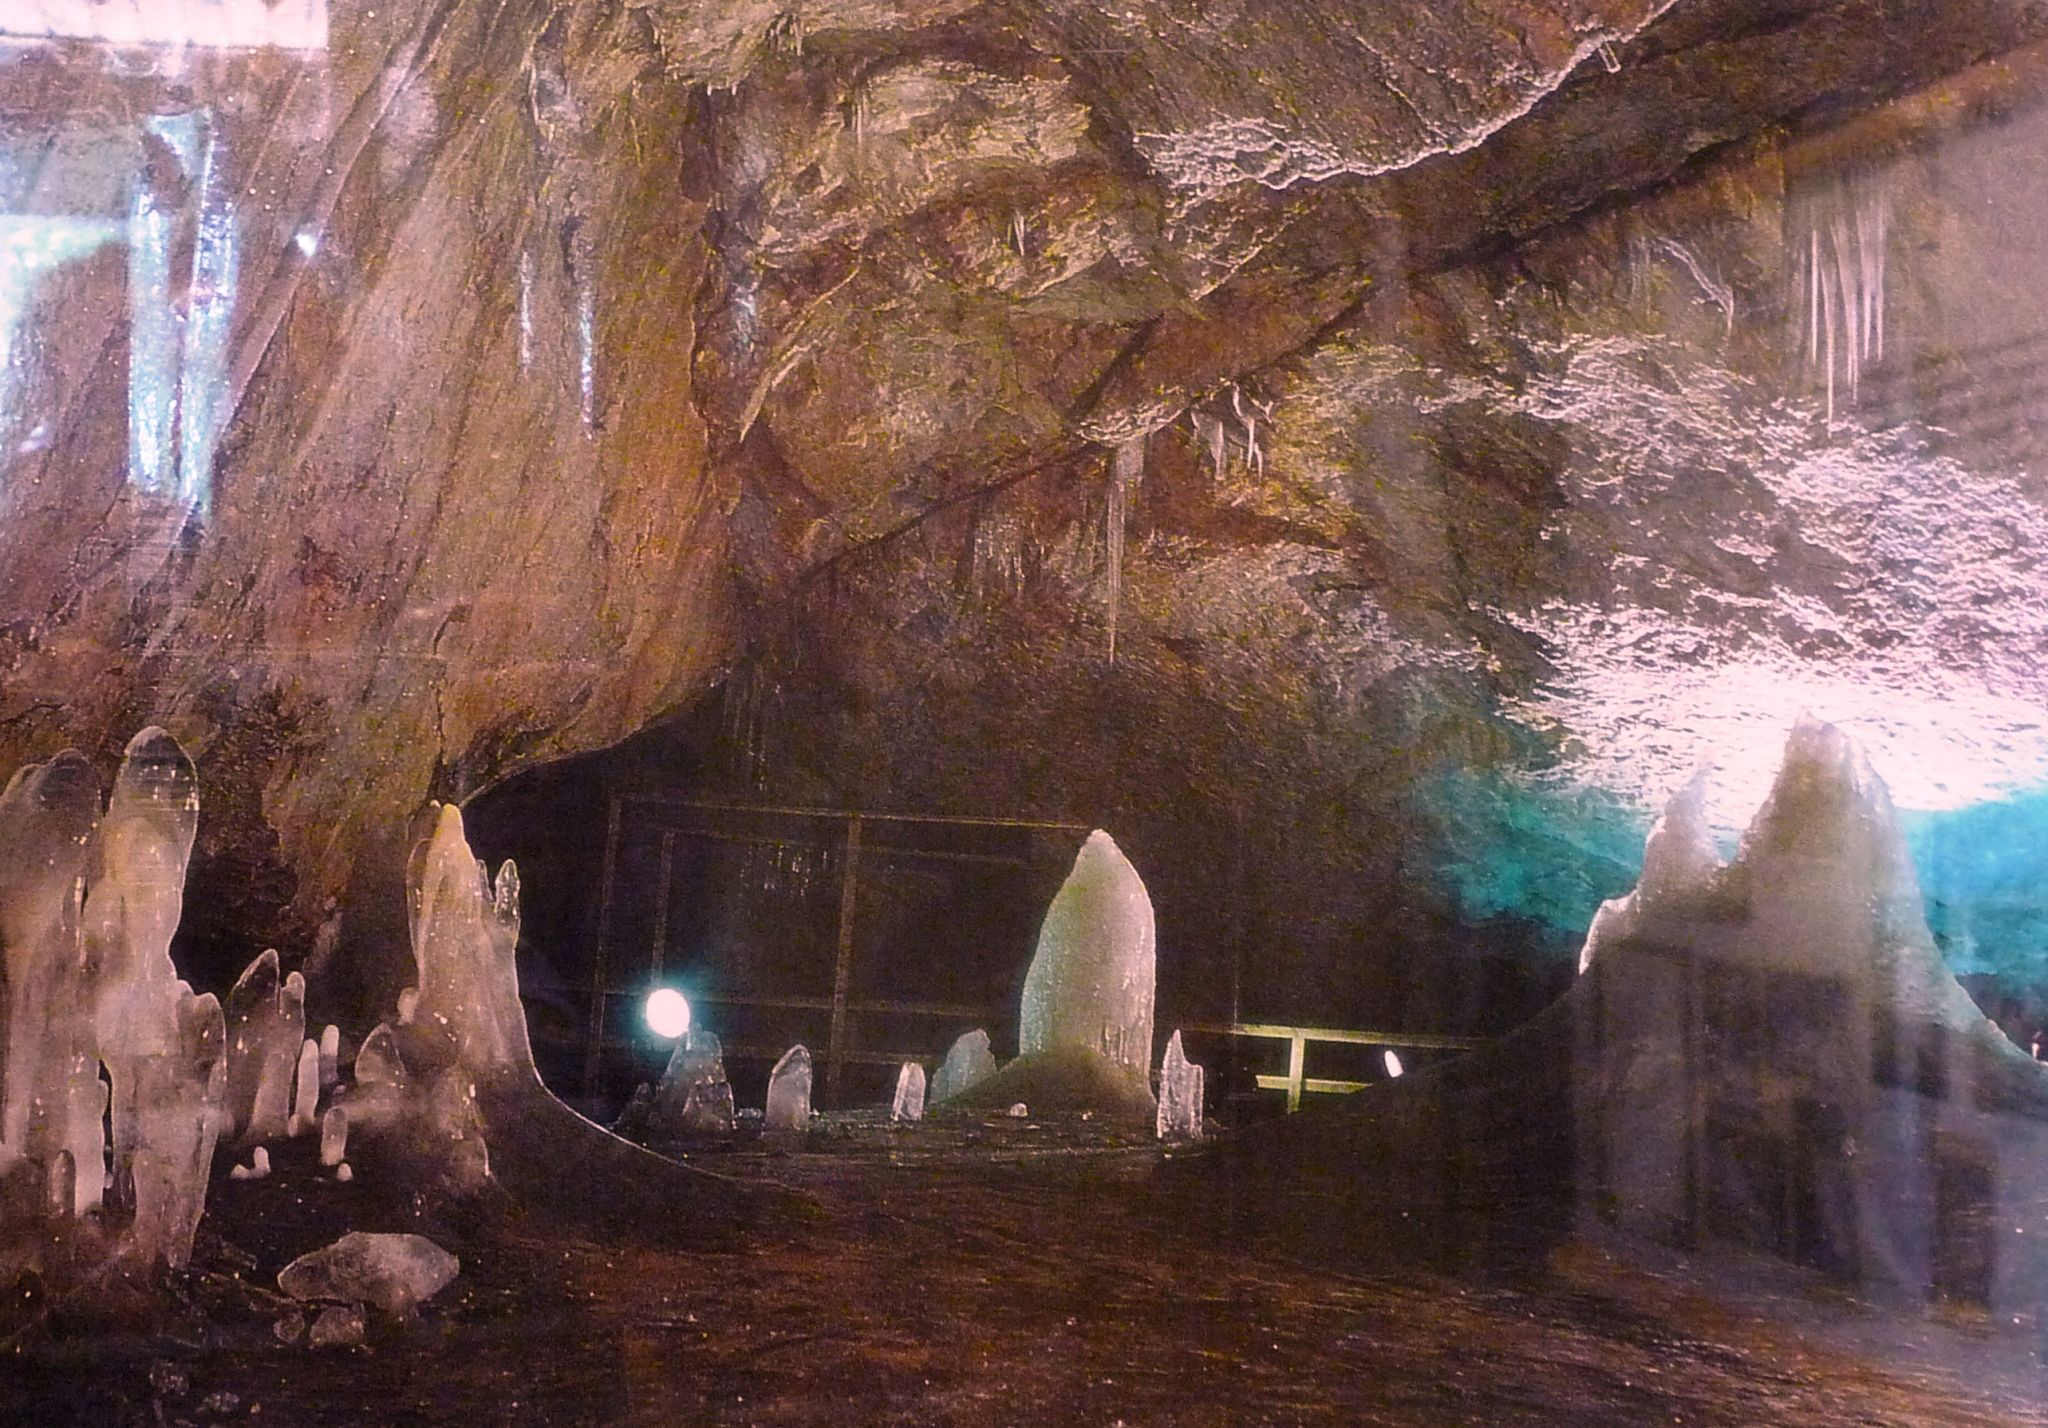 Dobinska ladova jaskyna